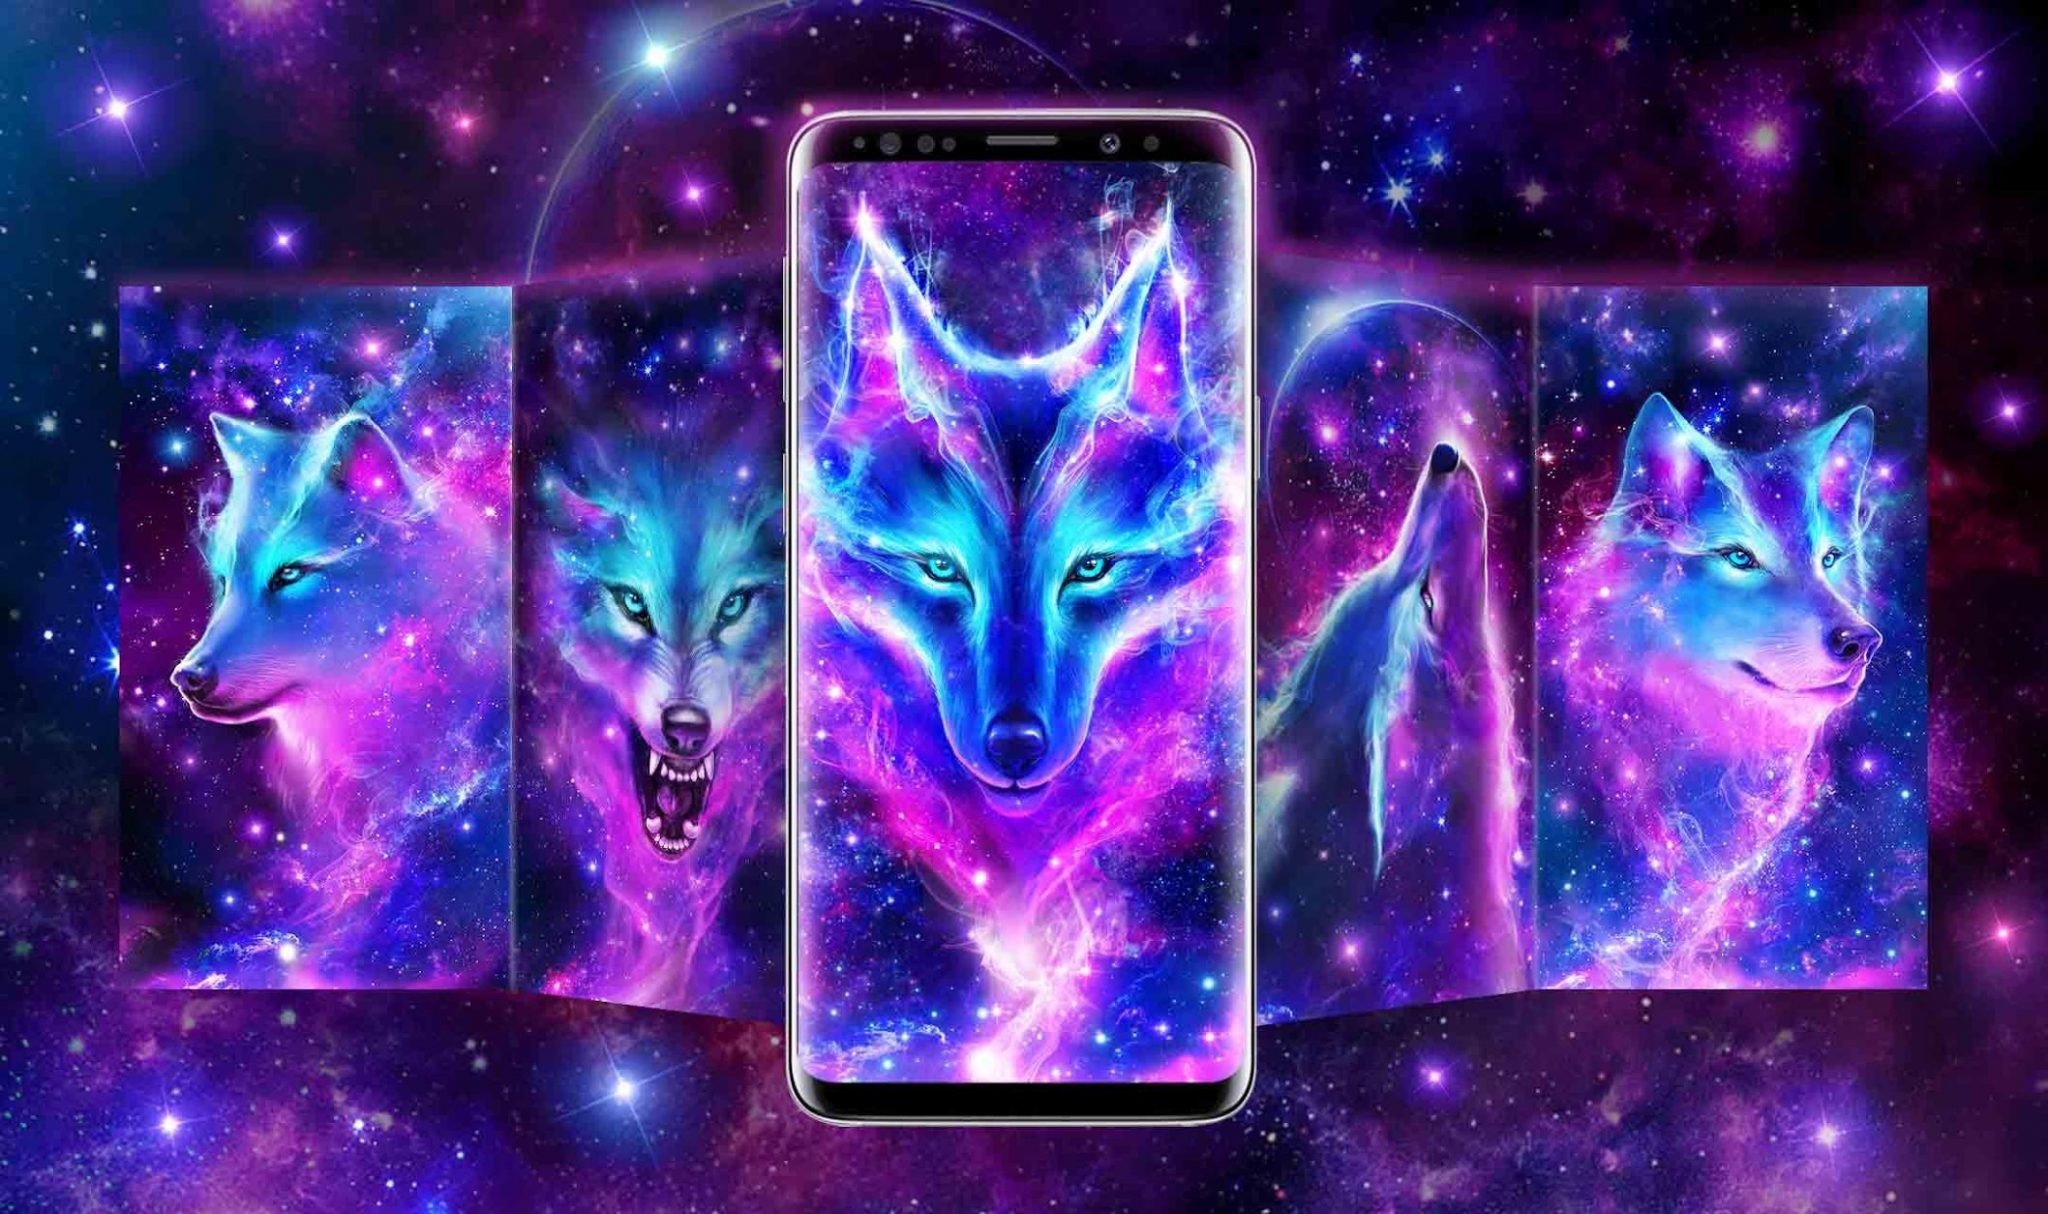 Обои на телефон андроид космические - волки красивые